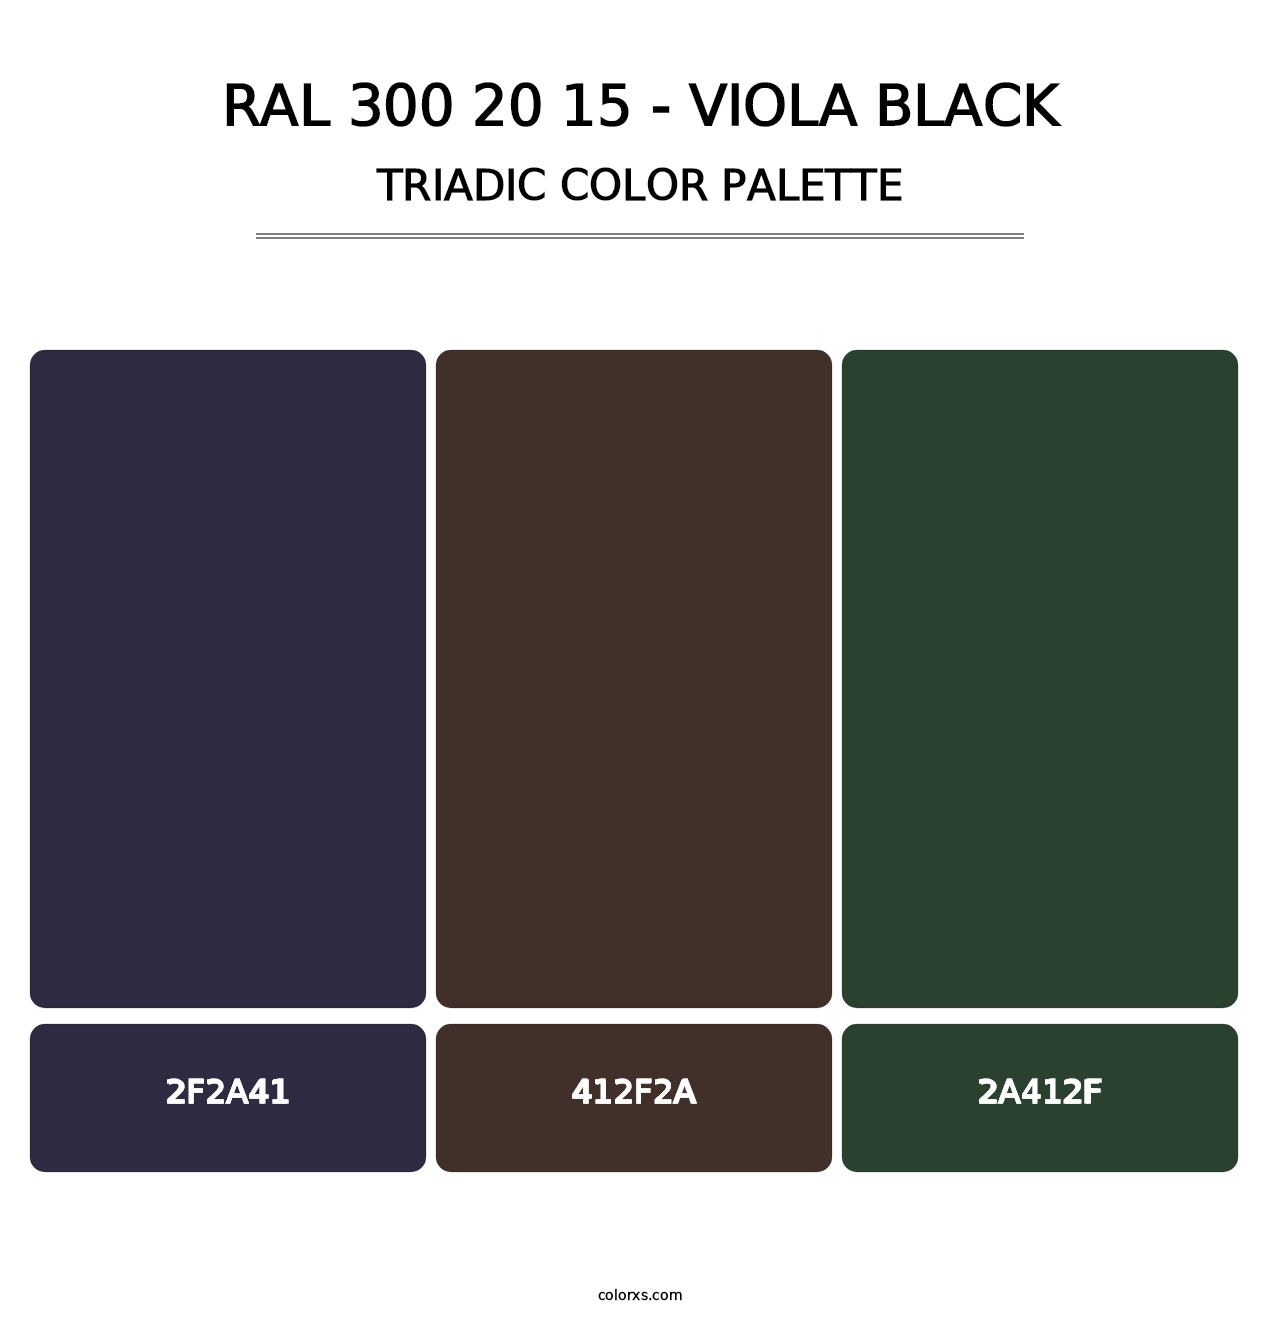 RAL 300 20 15 - Viola Black - Triadic Color Palette